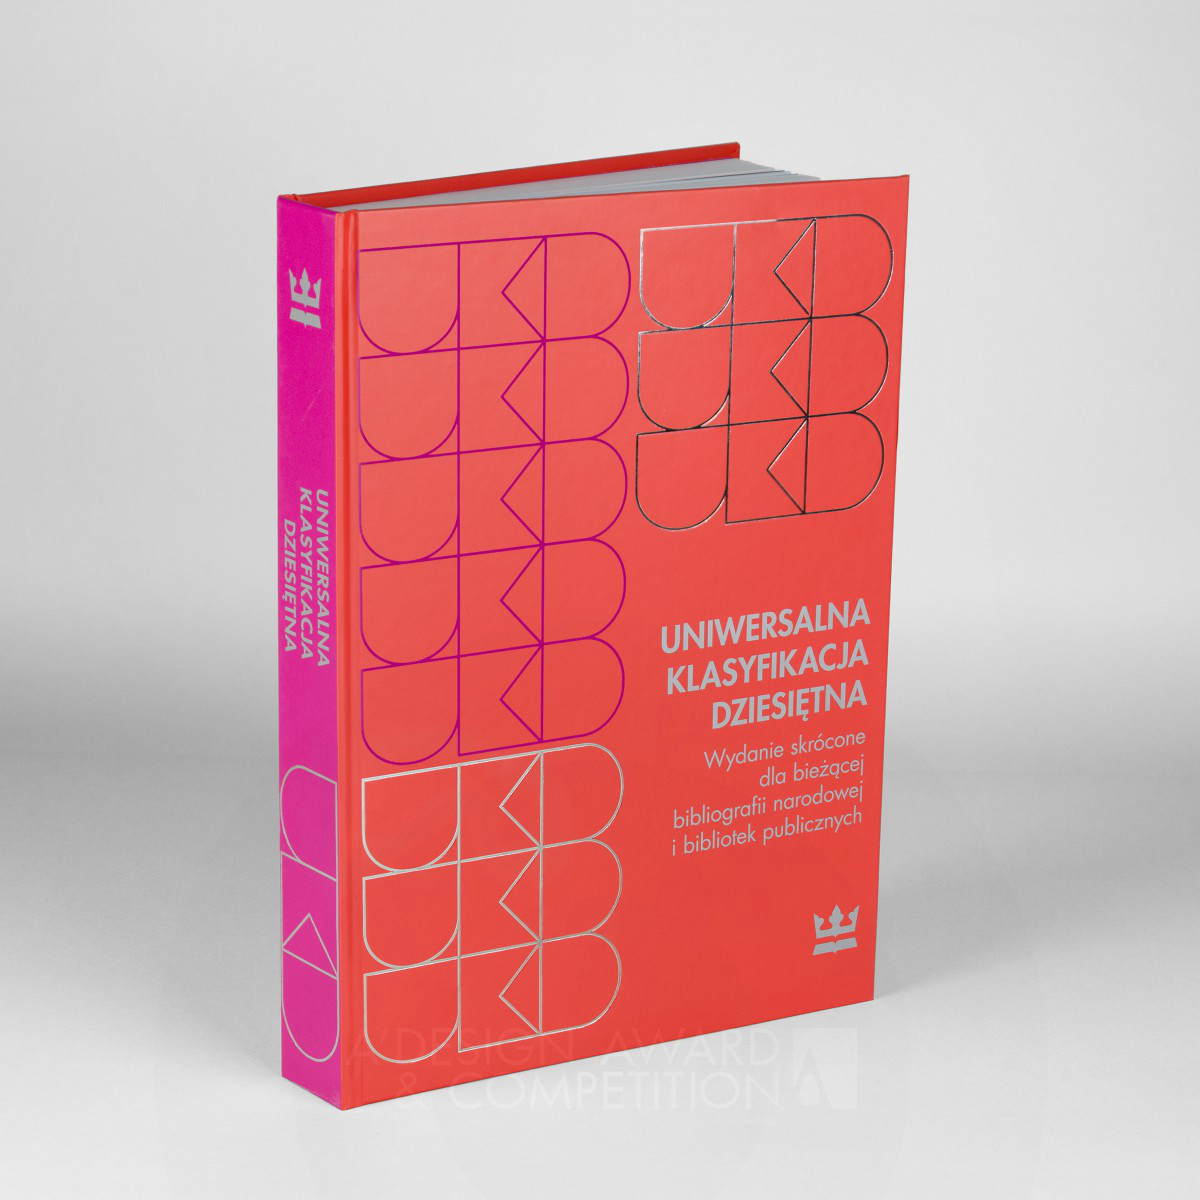 Ukd Catalog by Izabela Jurczyk Iron Print and Published Media Design Award Winner 2024 